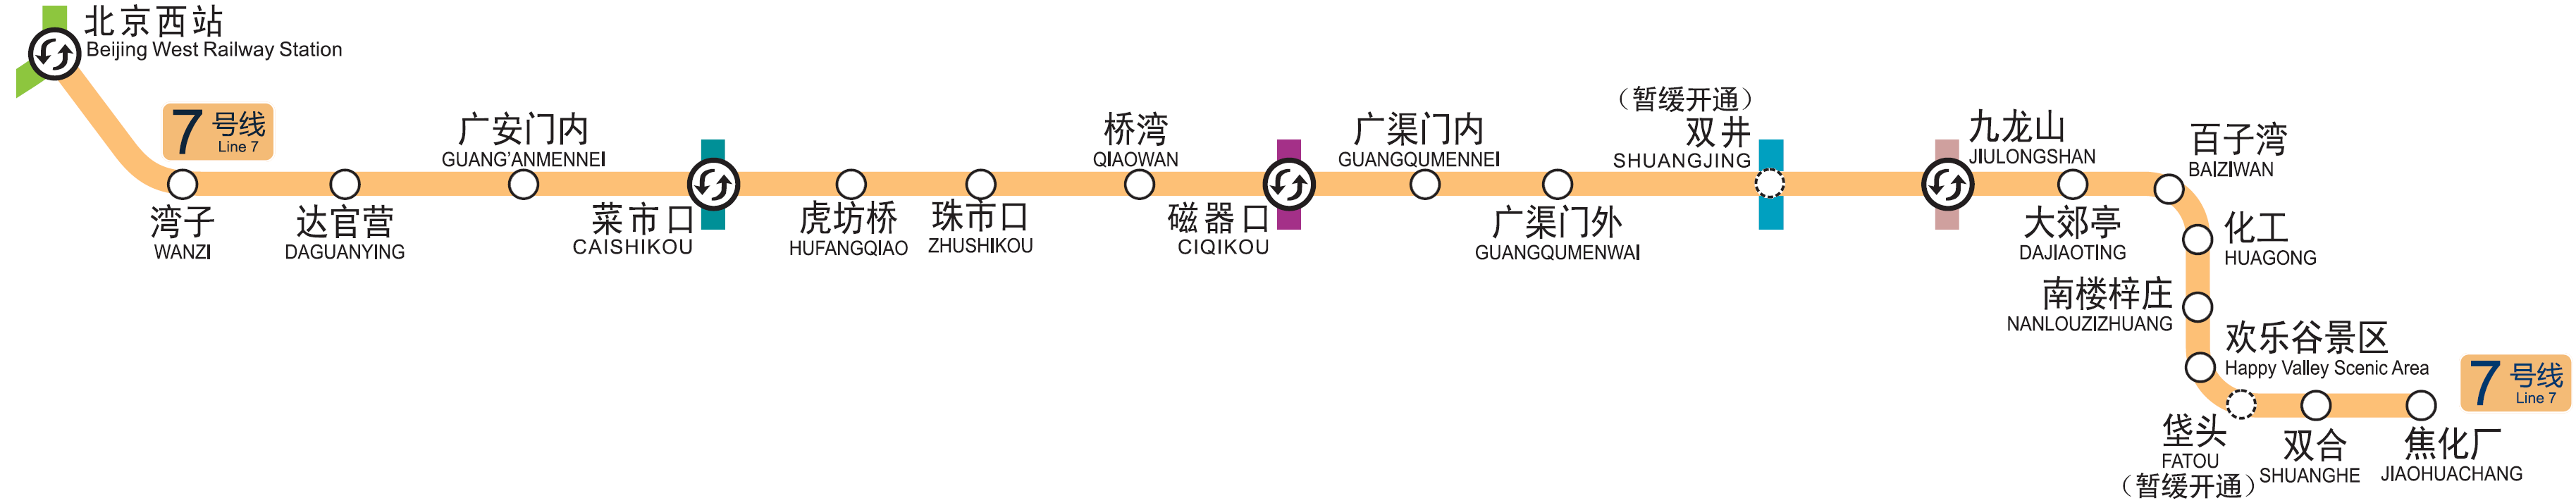 北京捷運7號線線路圖